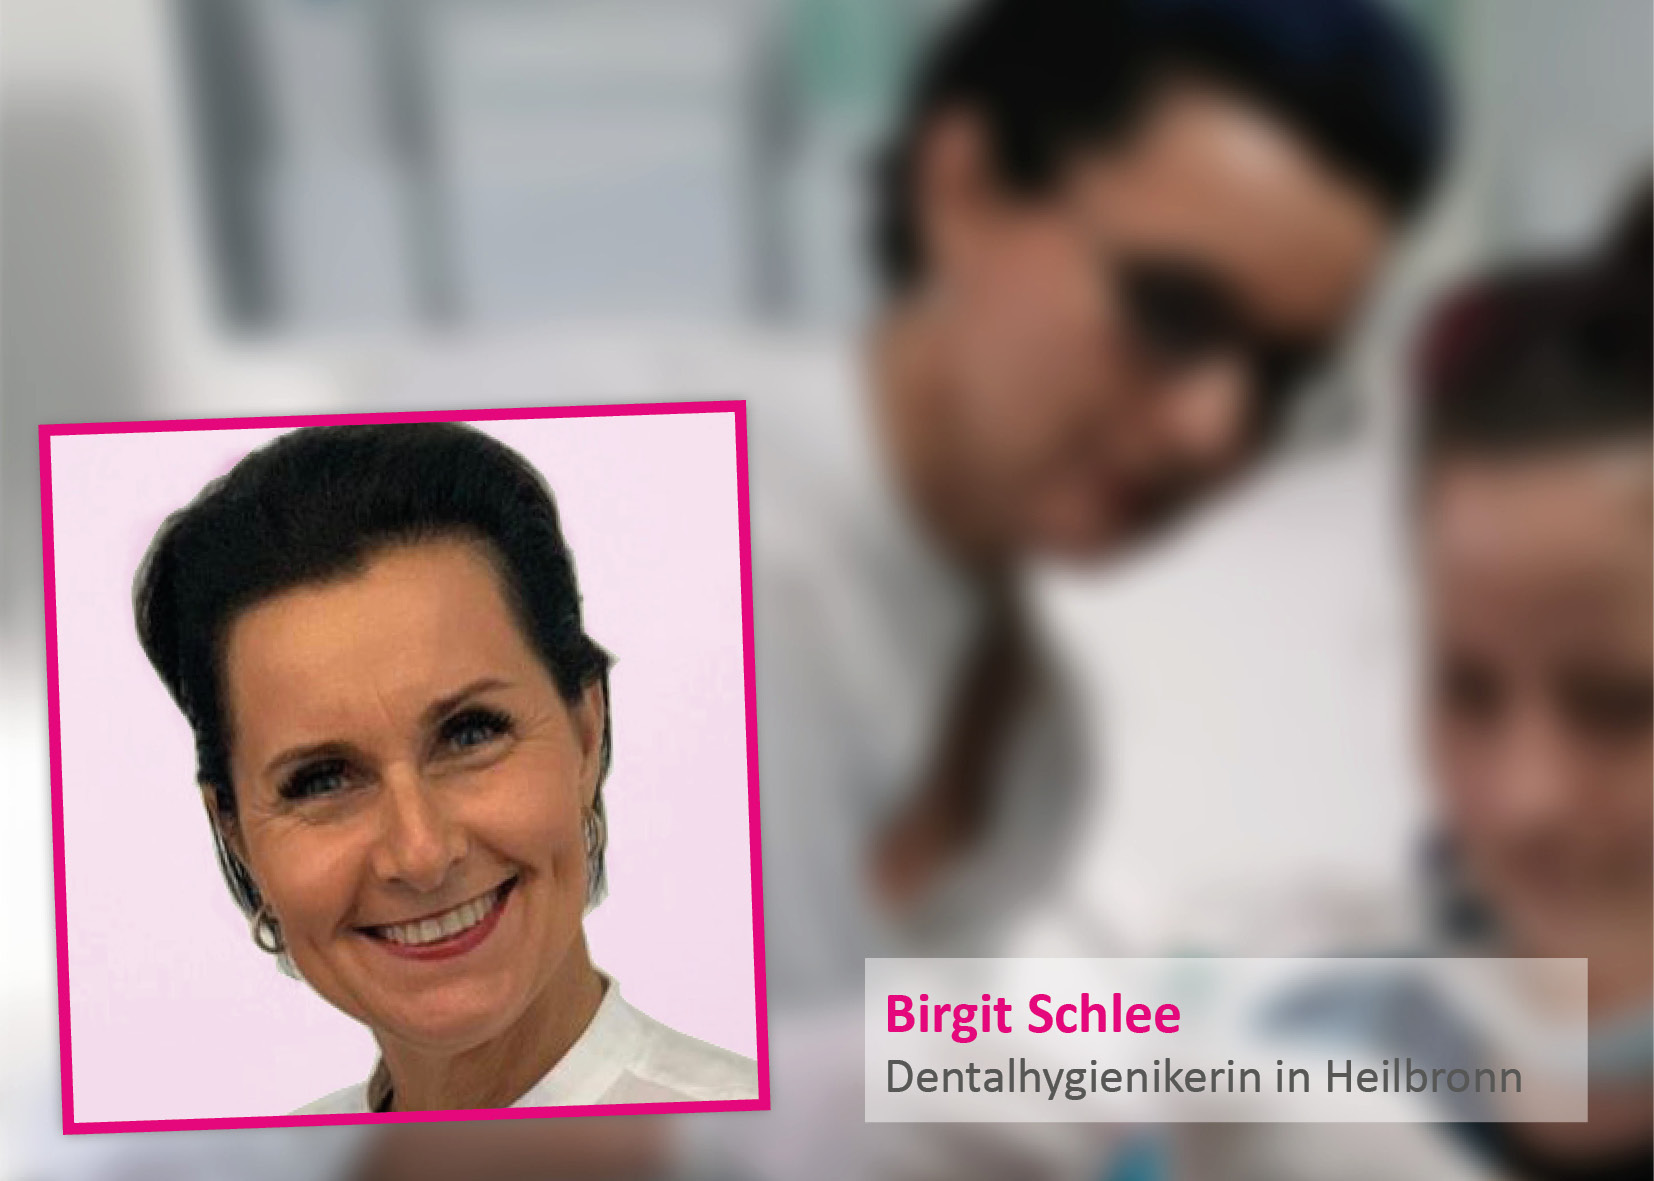 Birgit Schlee, tandhygienist